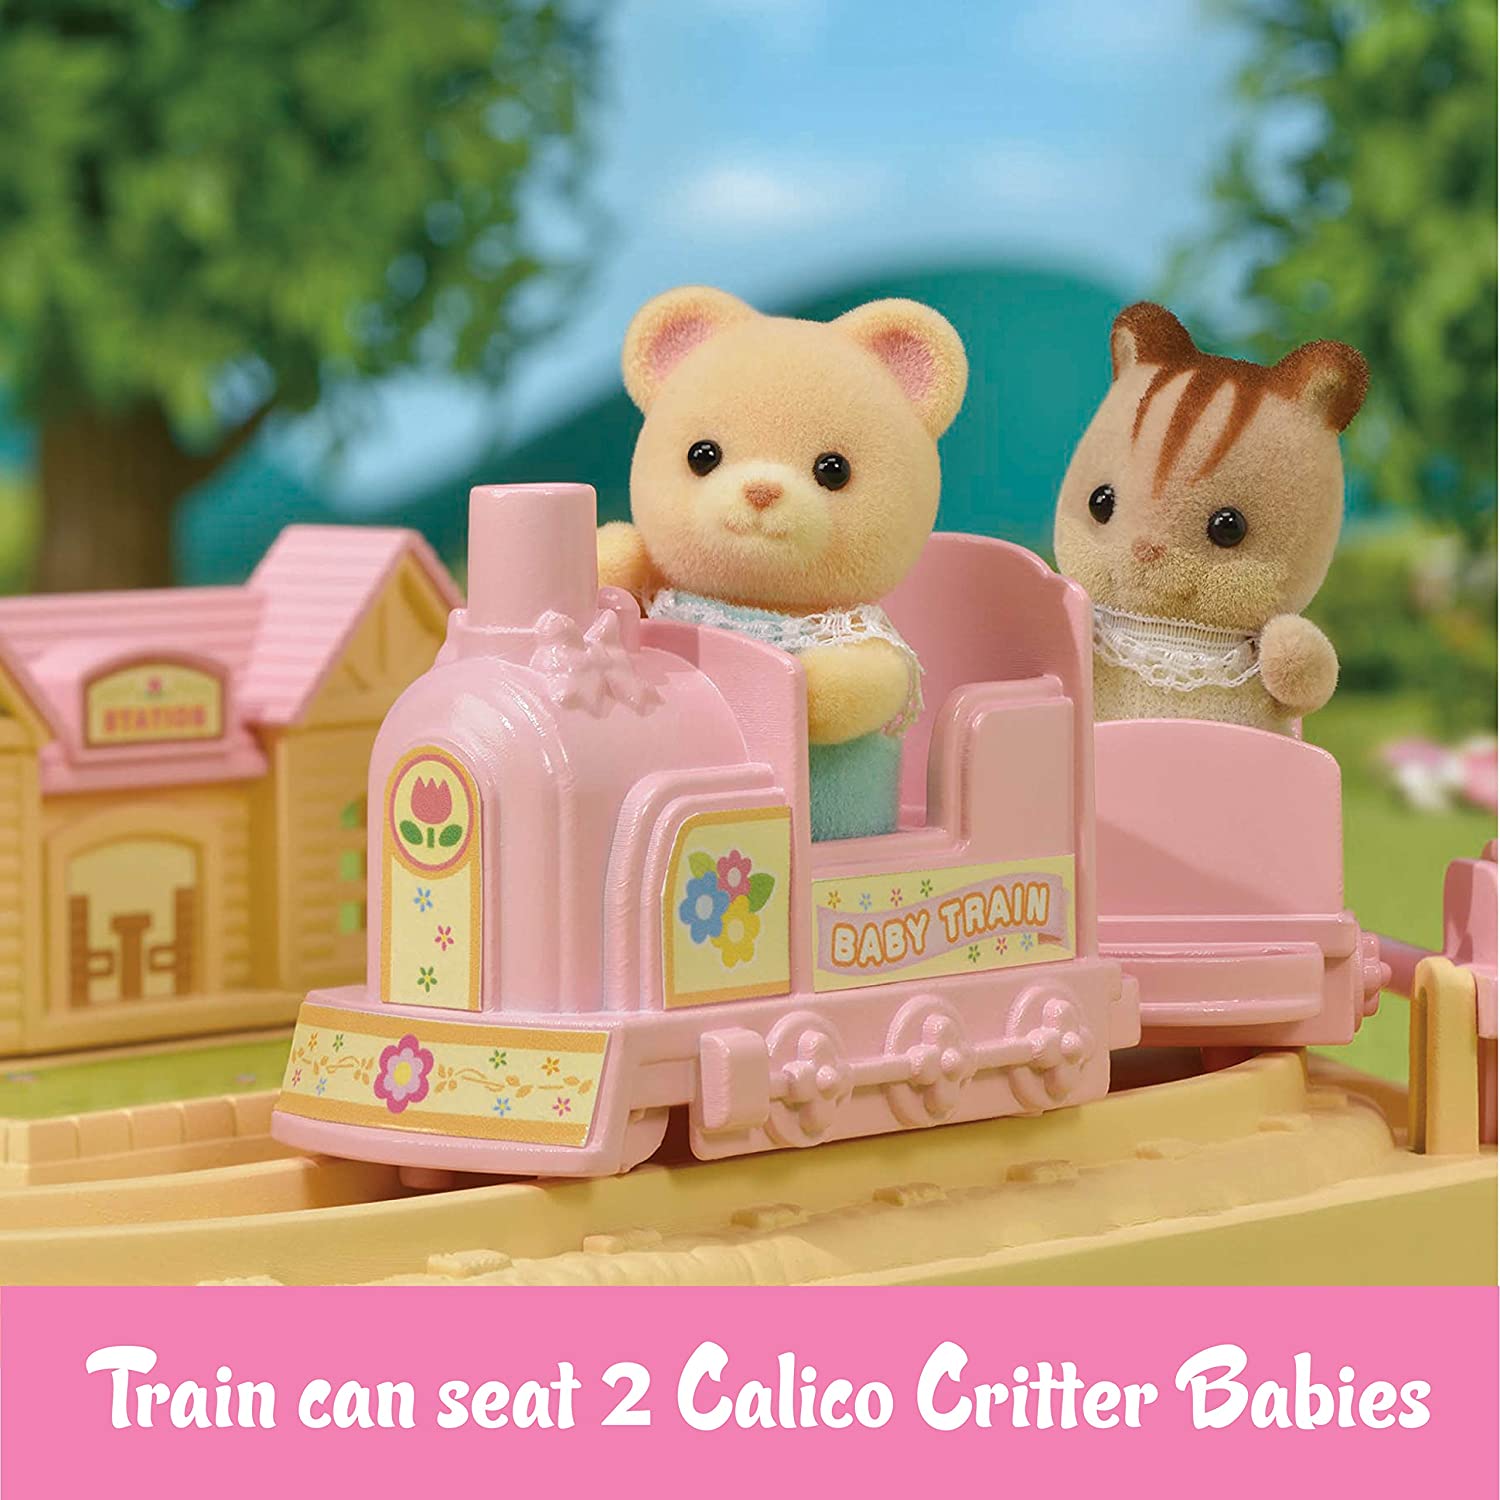 Baby Choo-Choo Train